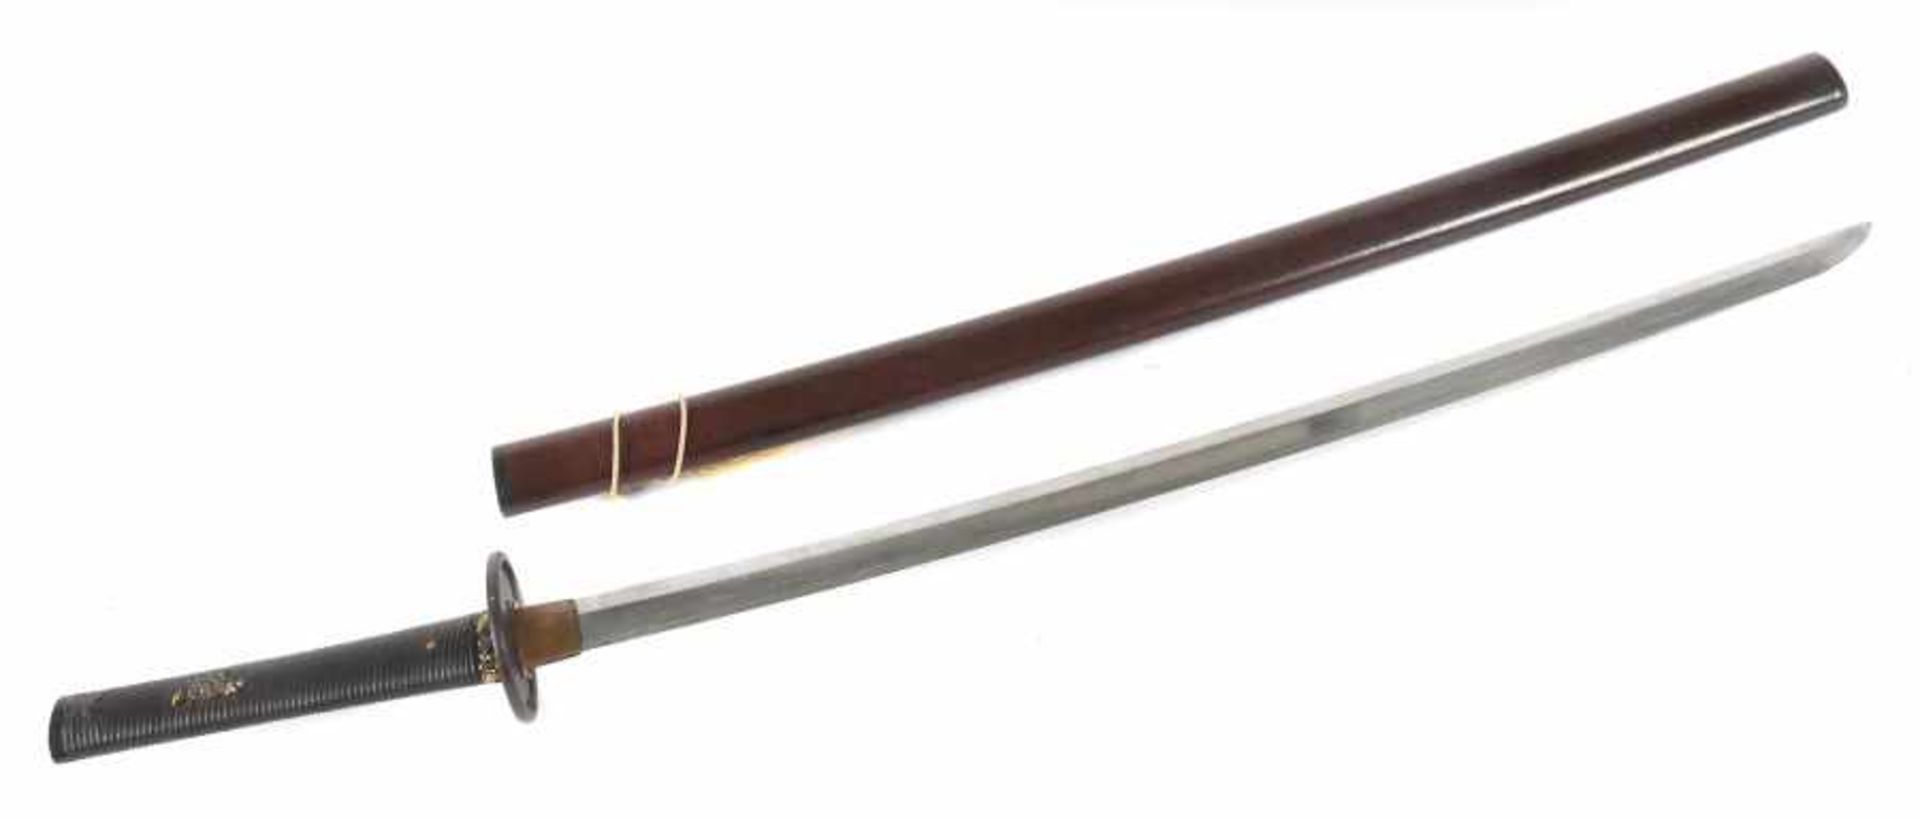 Japanisches Langschwert20. Jh., nach dem Vorbild eines Katana Samurai-Schwerts, leicht konvex